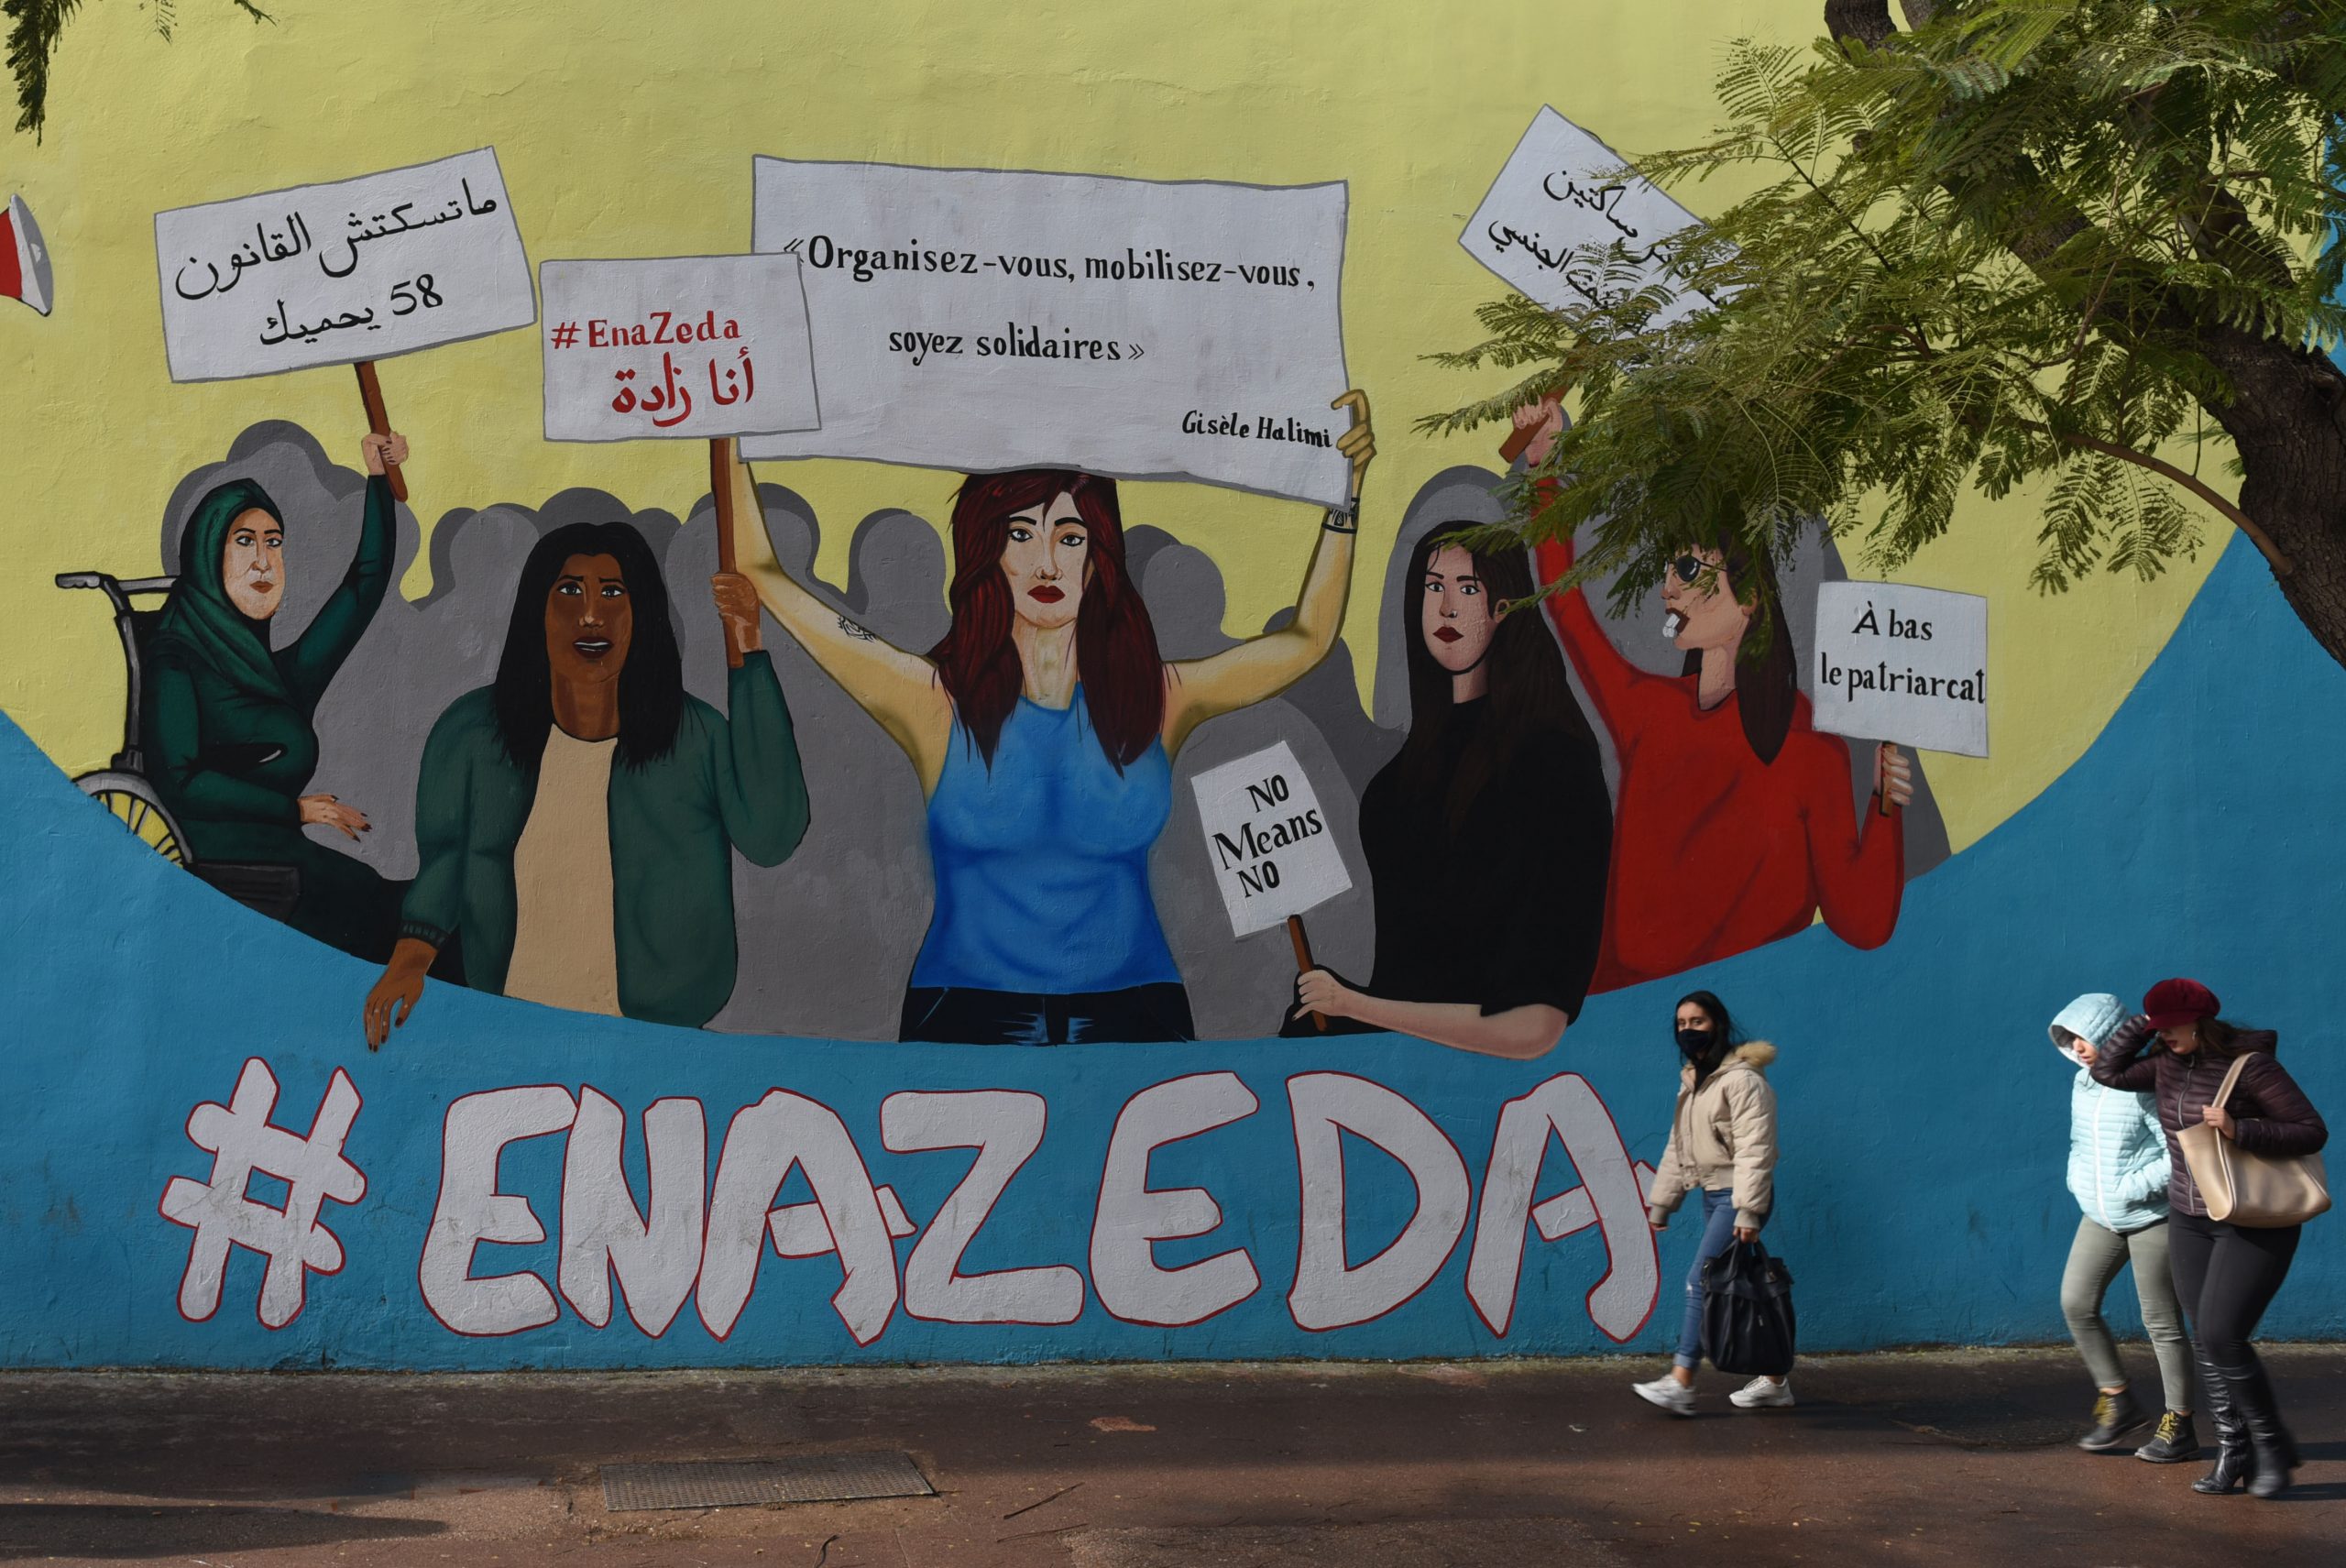 عمل جداري يجسد متظاهرات تحت هاشتاج "أنا زادة" والذي يحاكي "Me Too" بالانجليزية، تونس العاصمة، تونس، 12 يناير 2021. مهدي شيبيل، هانز لوكاس، عبر رويترز.